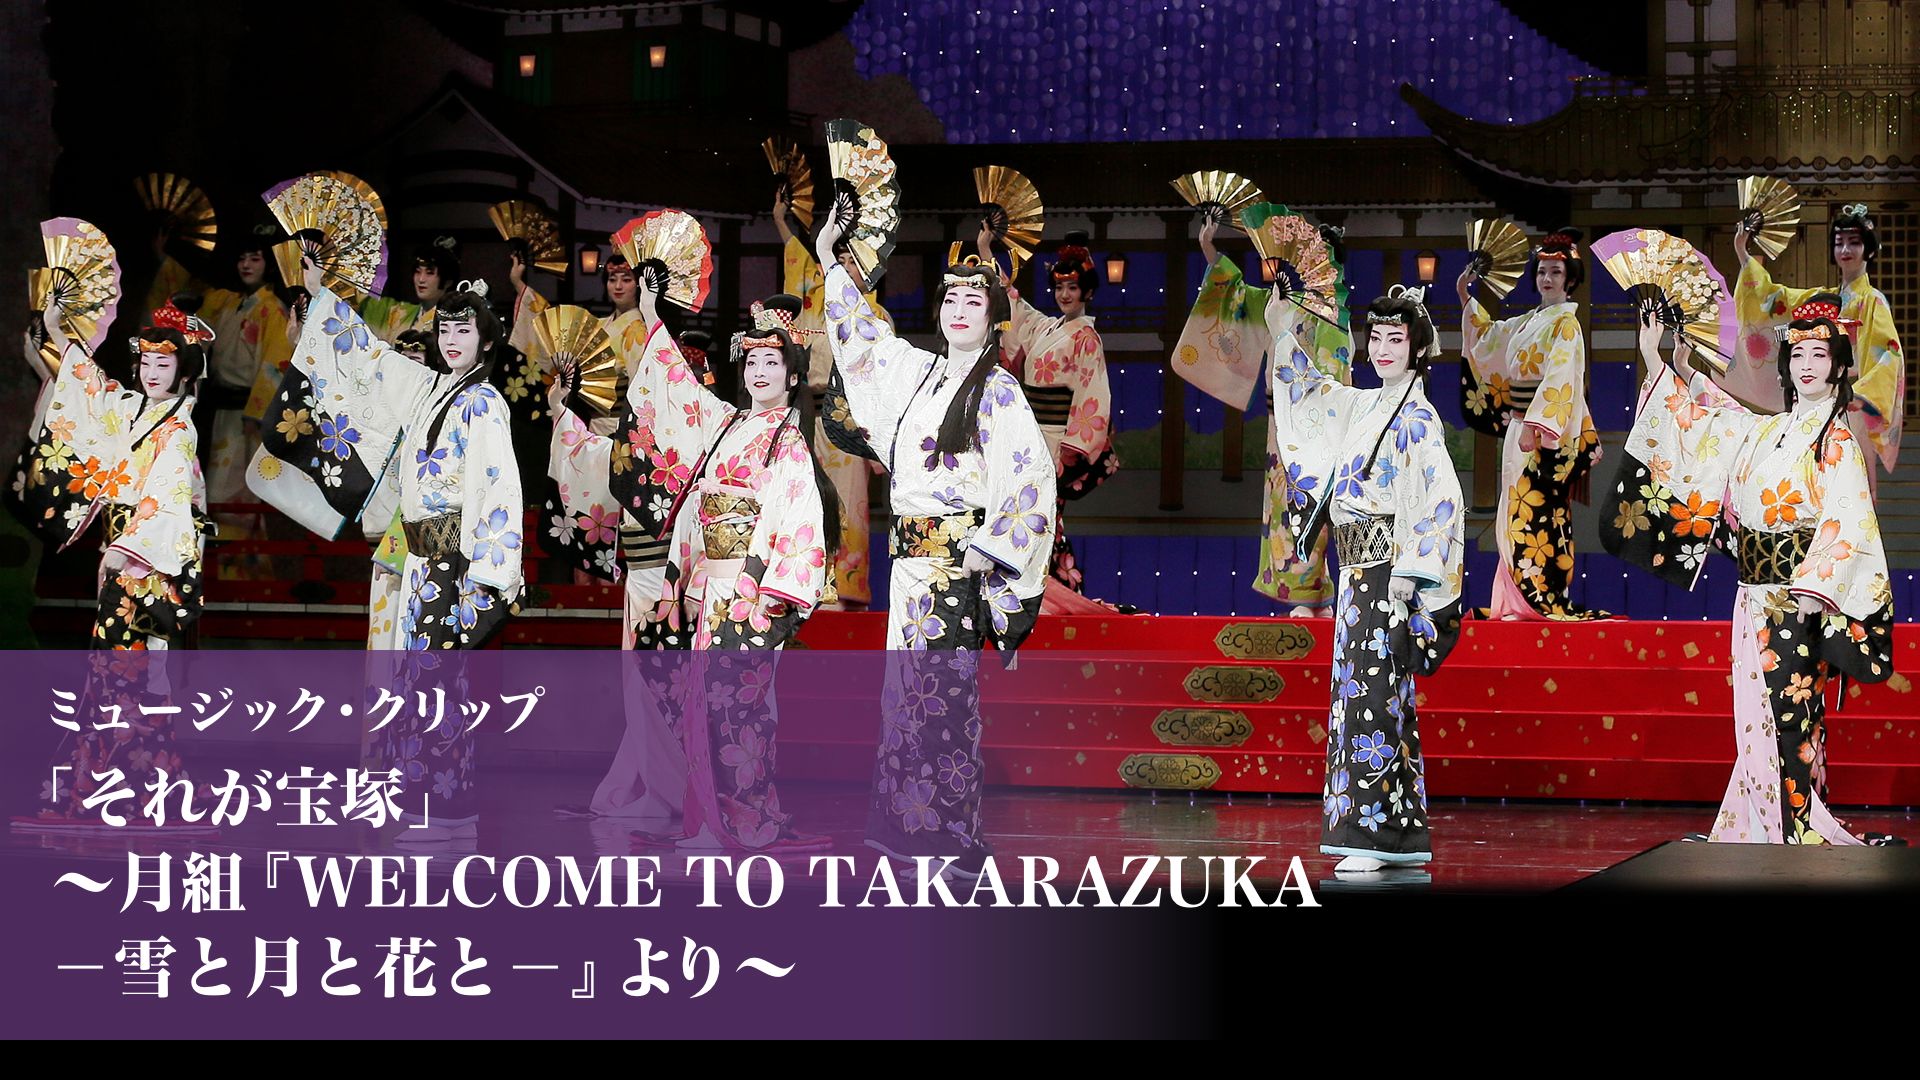 ミュージック・クリップ「それが宝塚」〜月組 『WELCOME TO TAKARAZUKA -雪と月と花と-』より〜